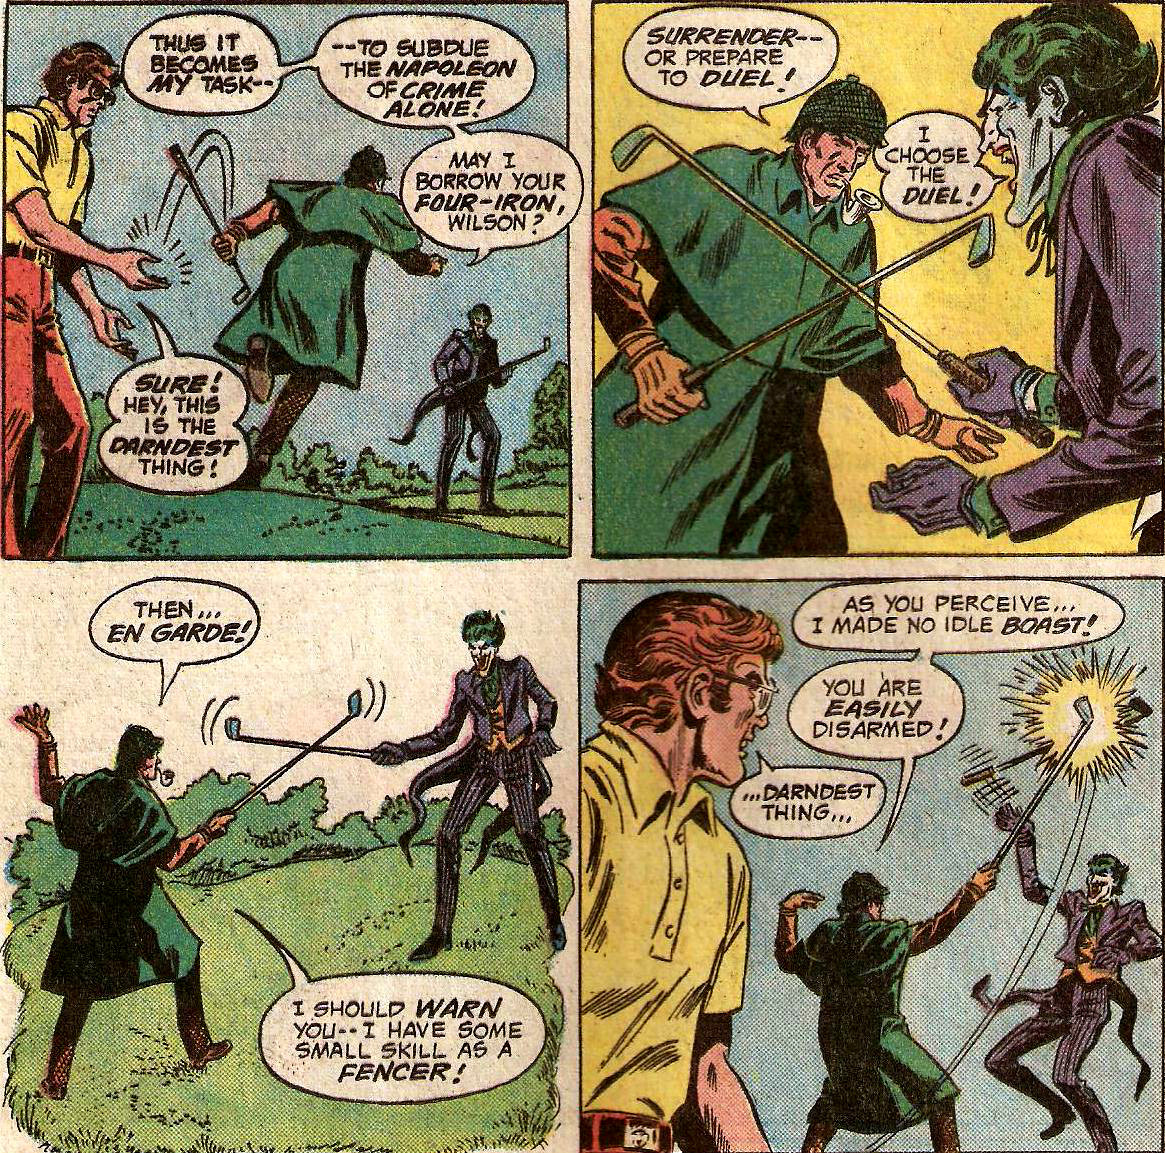 From Joker #6 (1976)